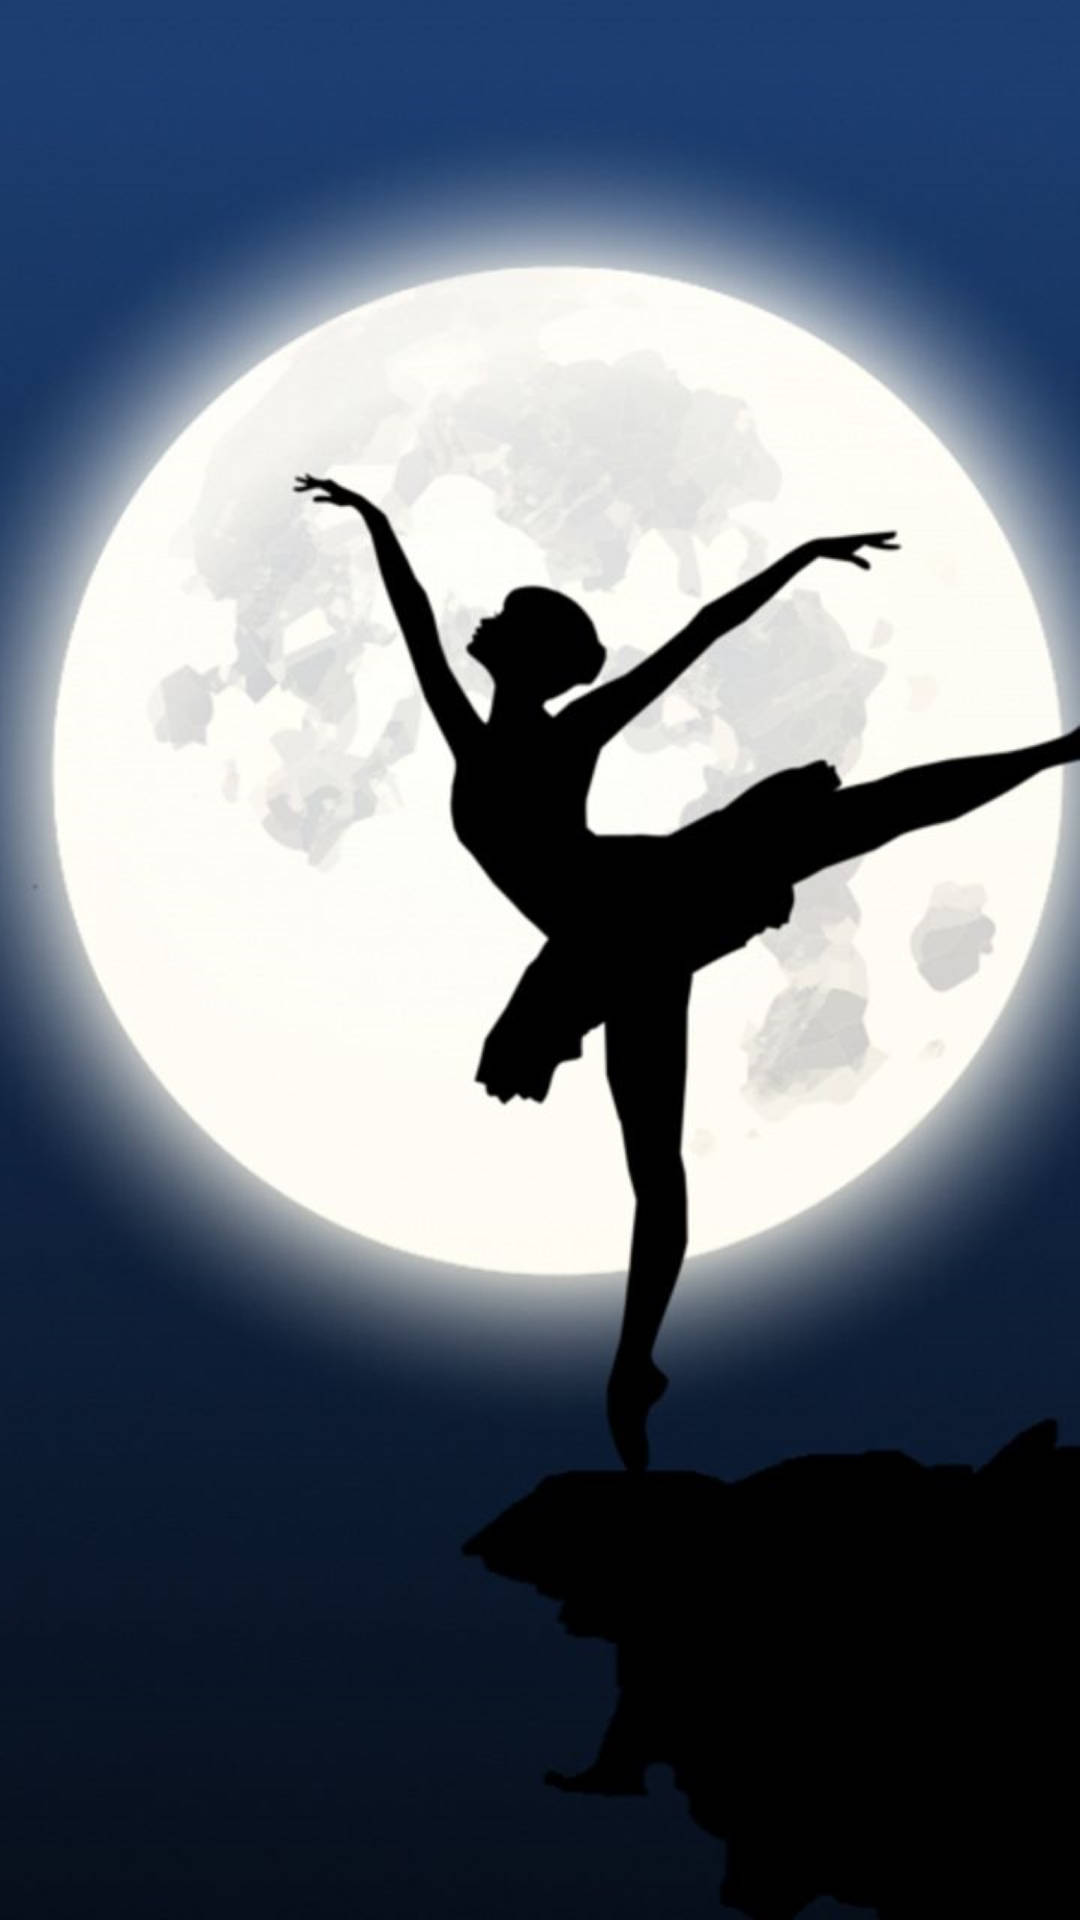 Download Ballet Dance In The Moonlight Wallpaper